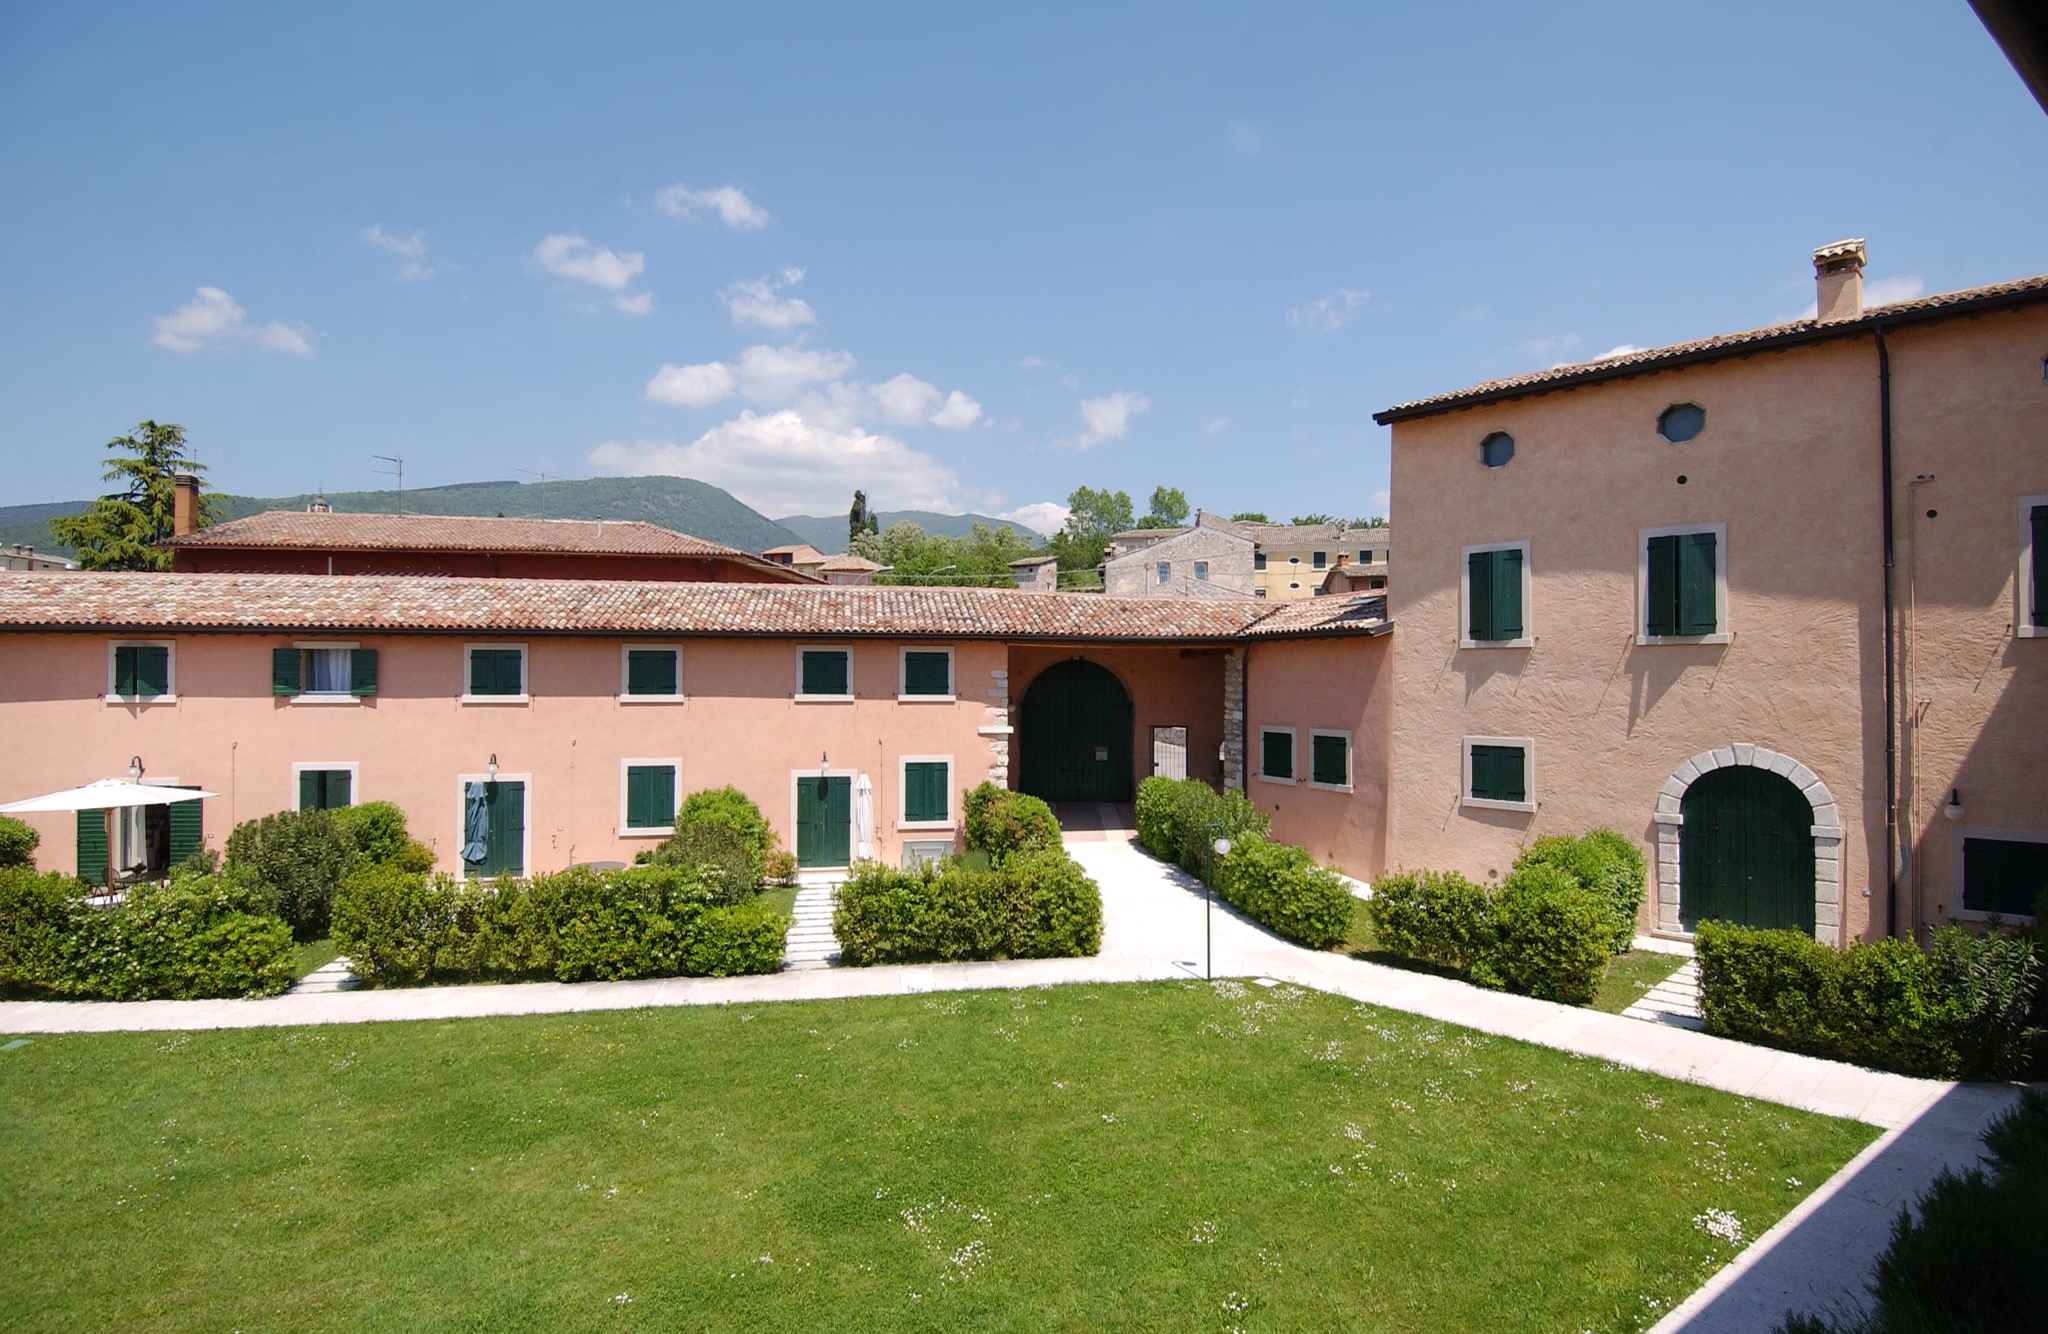 Ferienwohnung Residenz I Cortivi (279527), Costermano sul Garda, Gardasee, Venetien, Italien, Bild 1